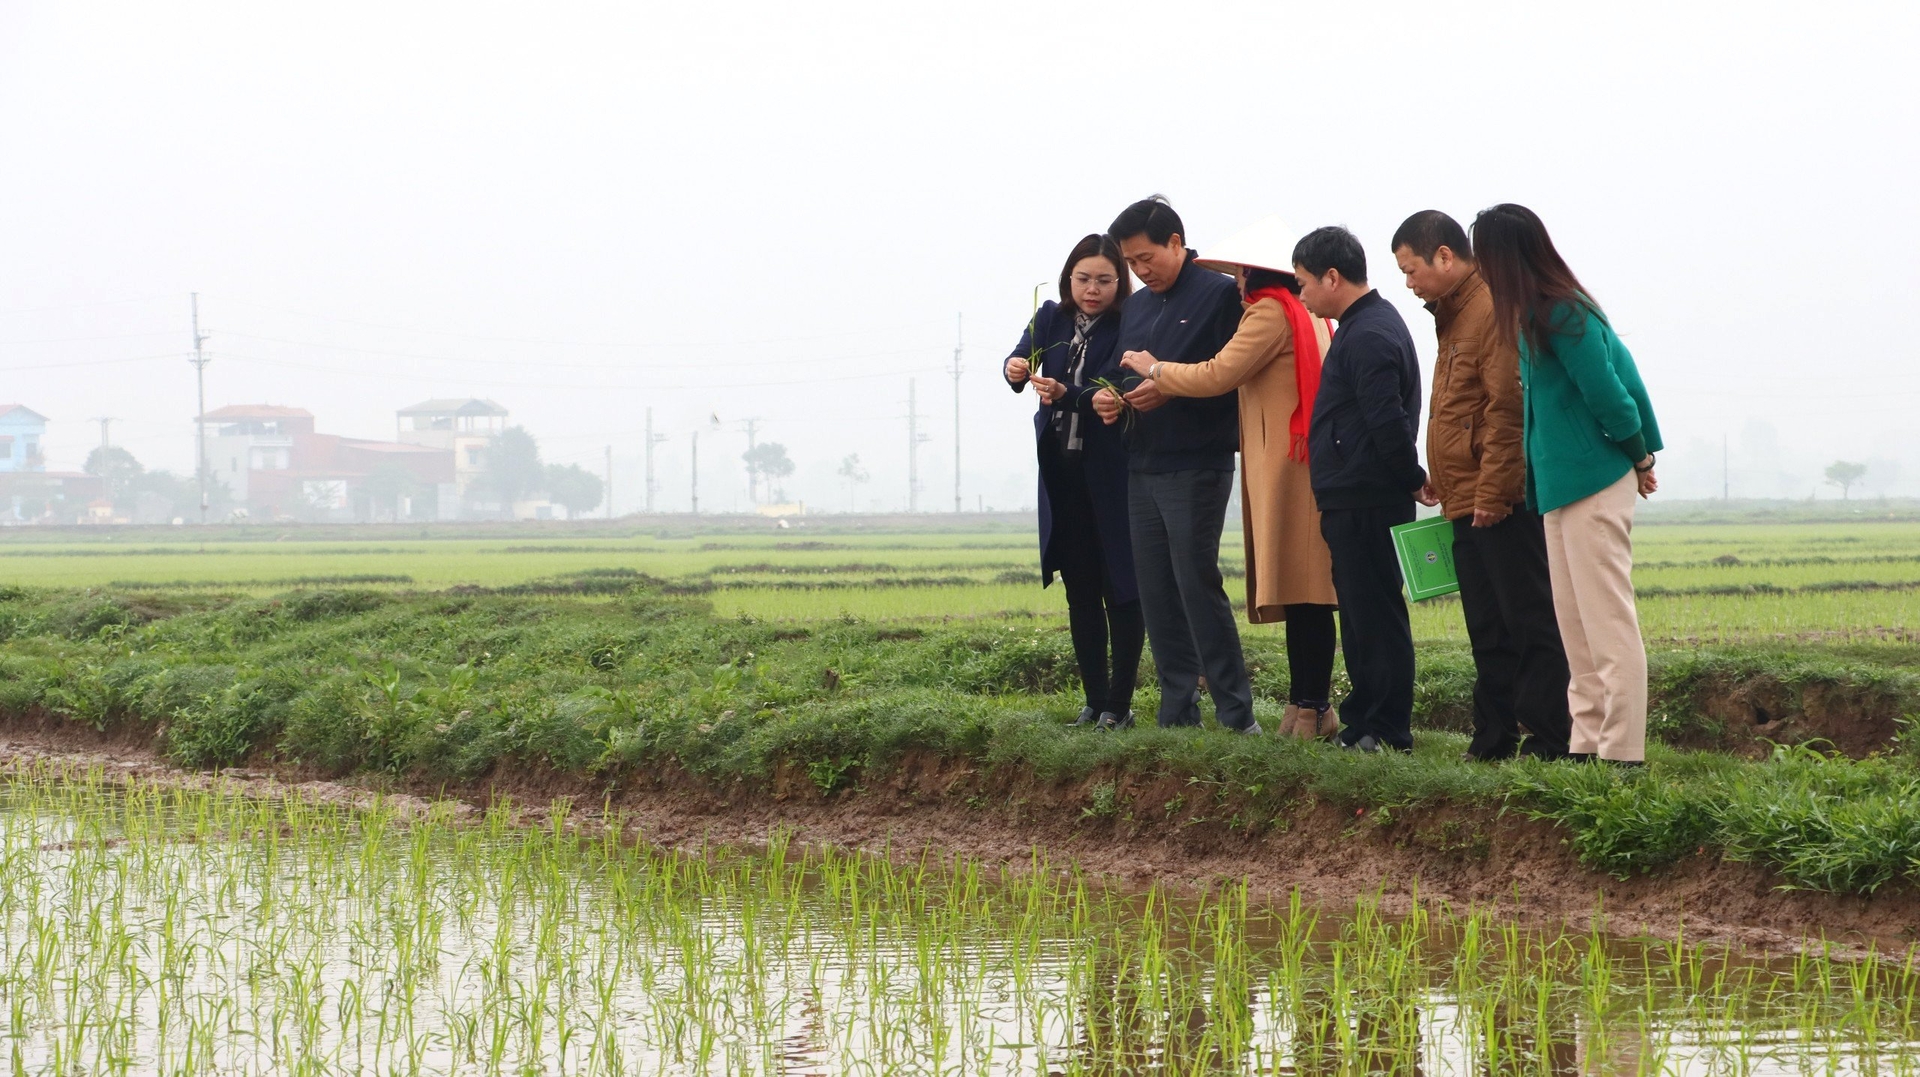 Giám đốc Sở NN-PTNT Hà Nội Nguyễn Xuân Đại cùng cán bộ chuyên môn kiểm tra chất lượng gieo cấy tại cánh đồng huyện Thanh Oai. Ảnh: Phương Thảo.